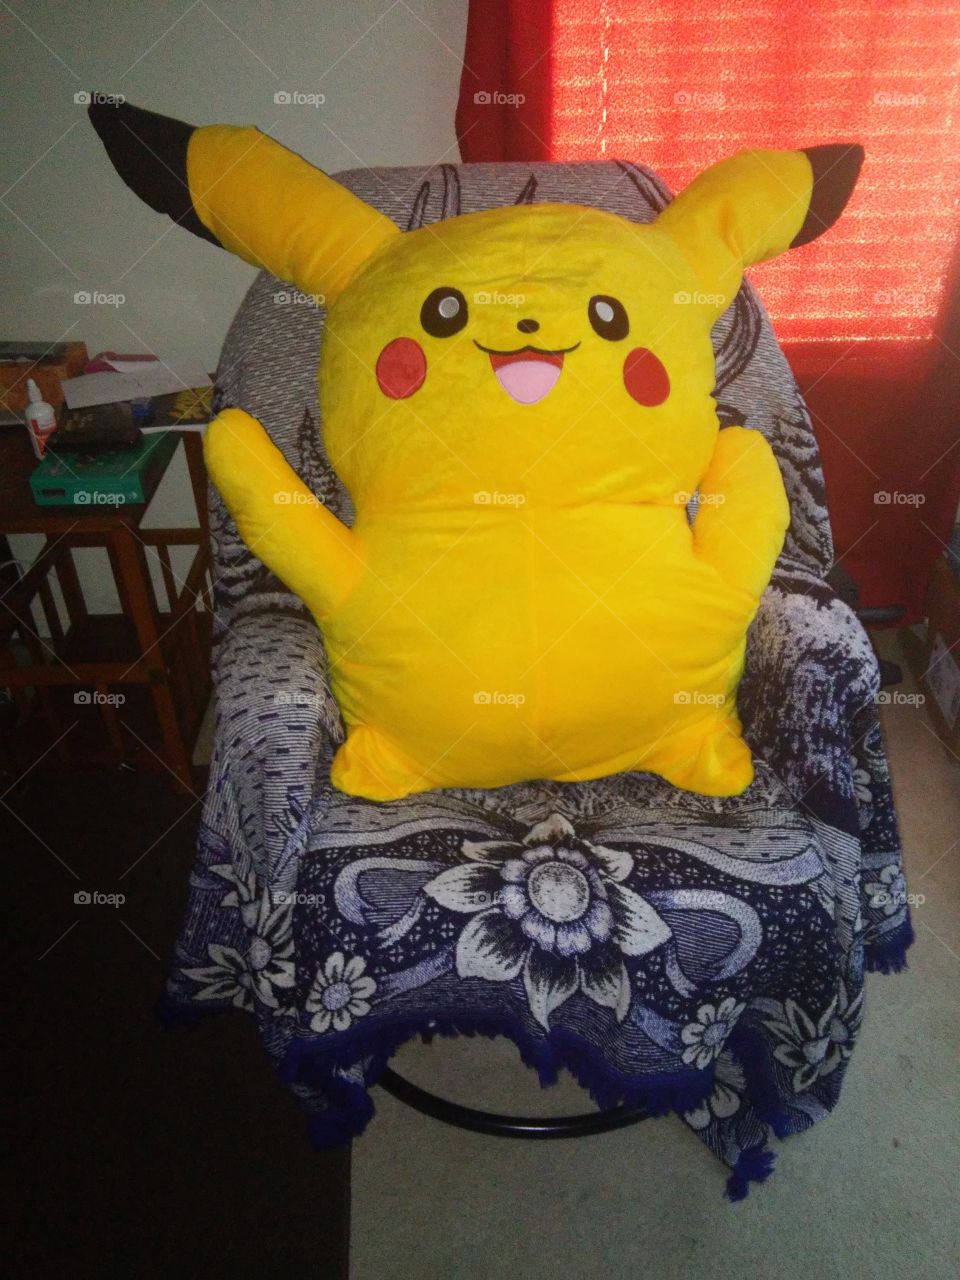 4 and a half foot tall pikachu stuffed animal.